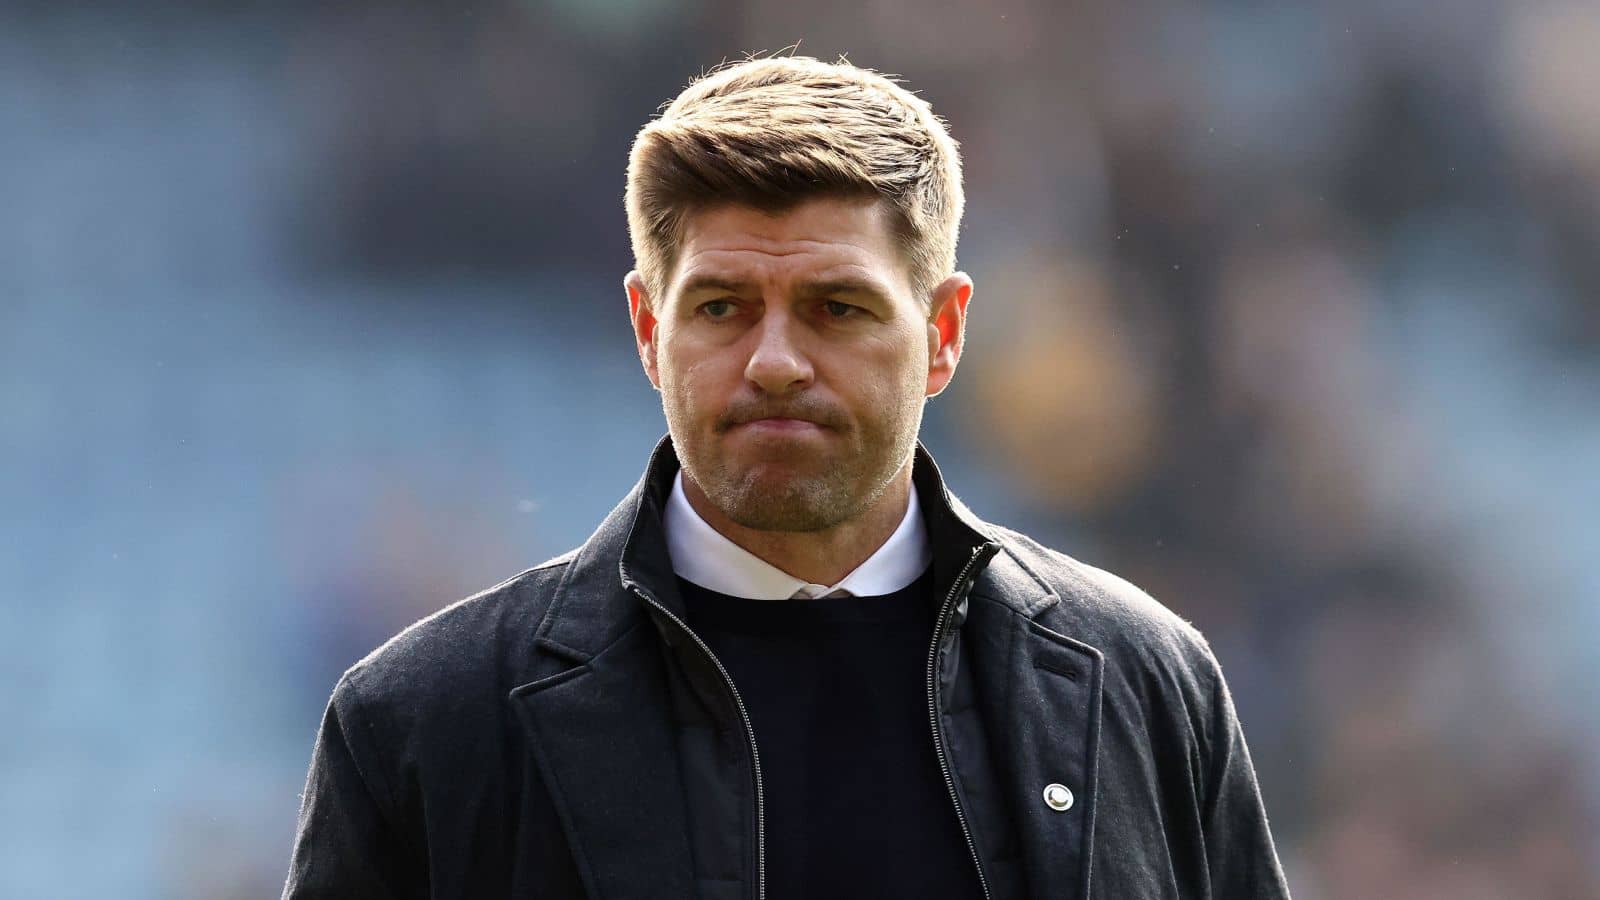 Steven Gerrard sacked as Aston Villa manager